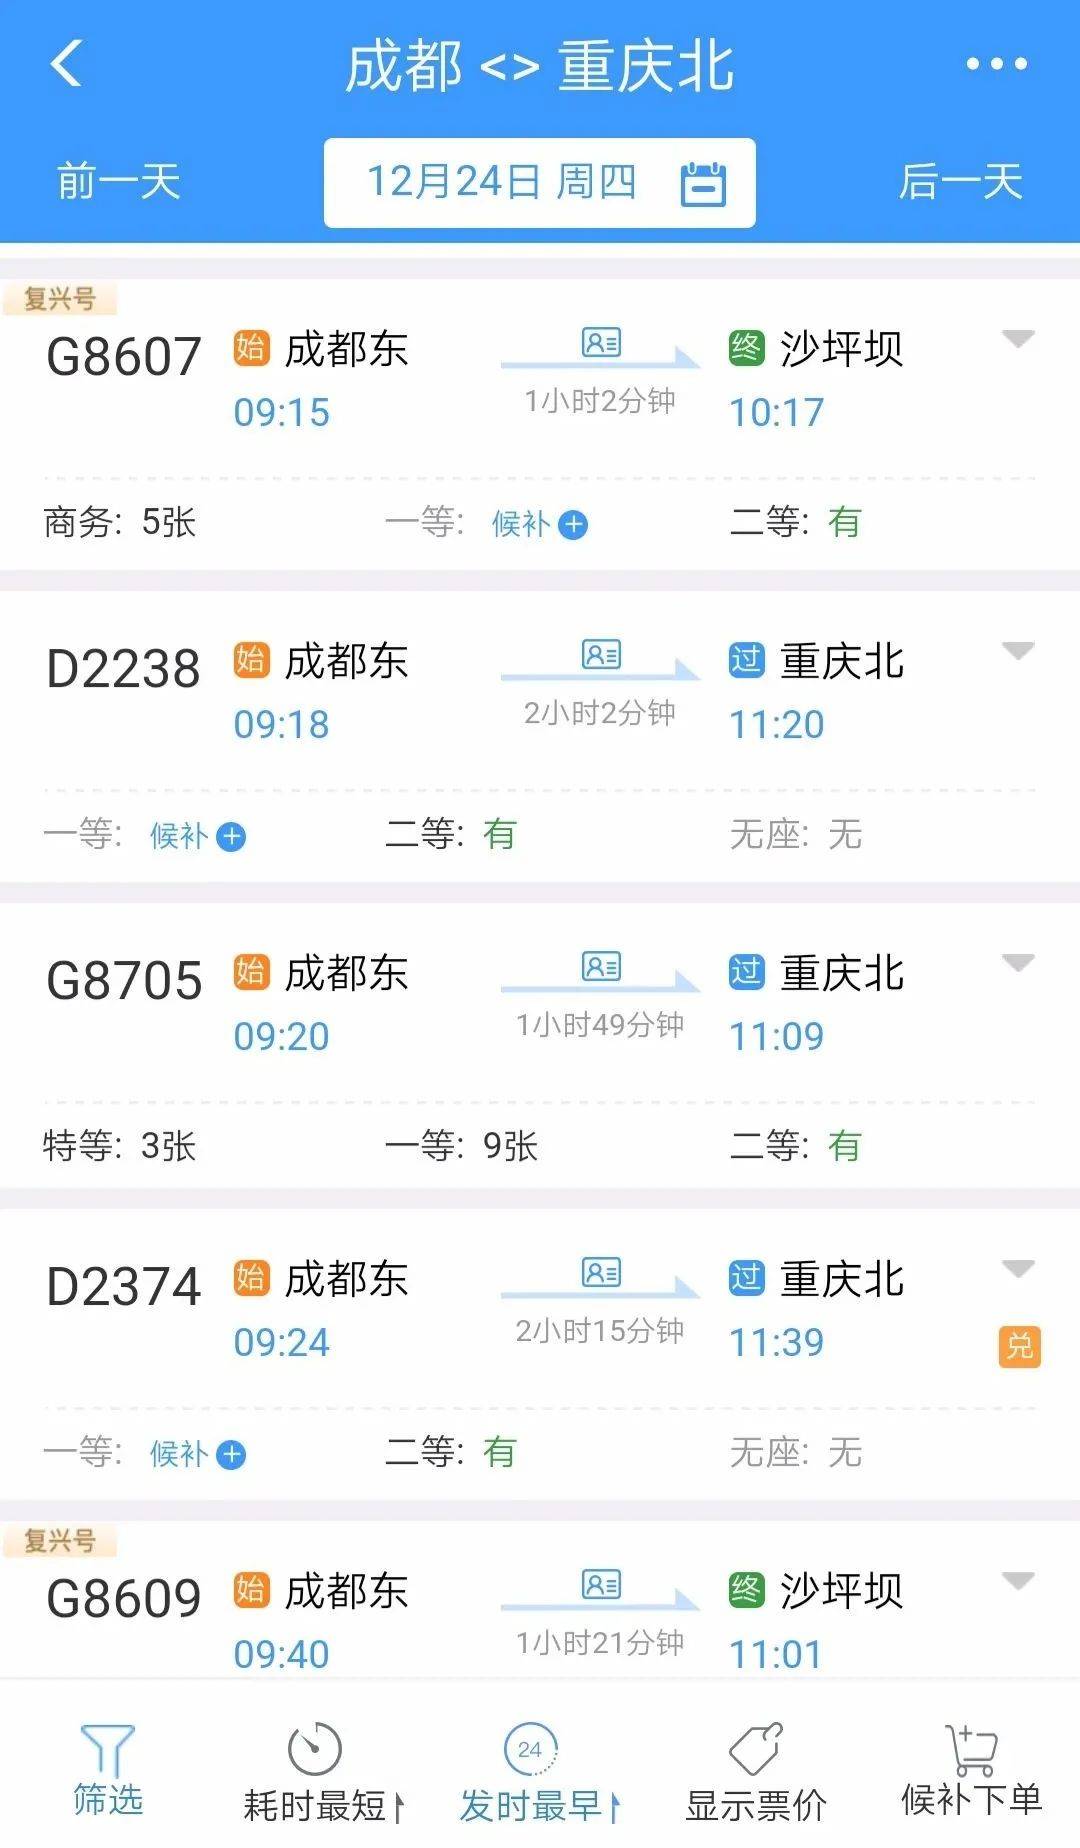 12306显示,12月24日上午9点15分,g8607次列车从成都东站发车,10点17分